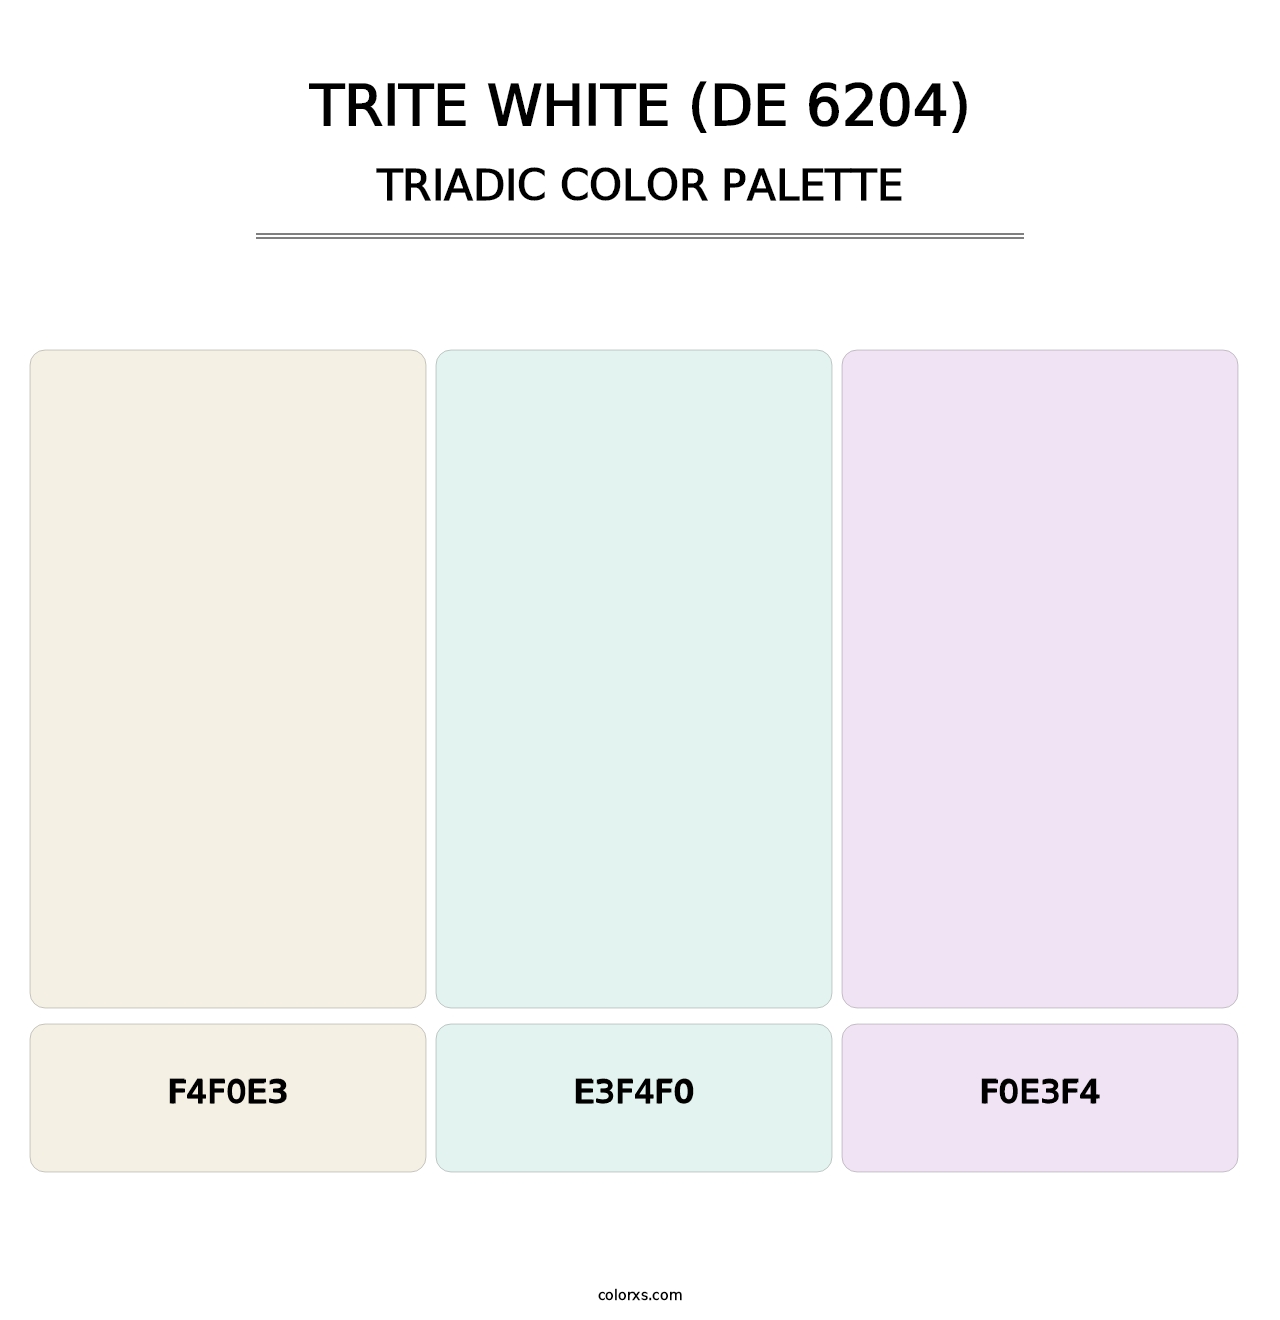 Trite White (DE 6204) - Triadic Color Palette